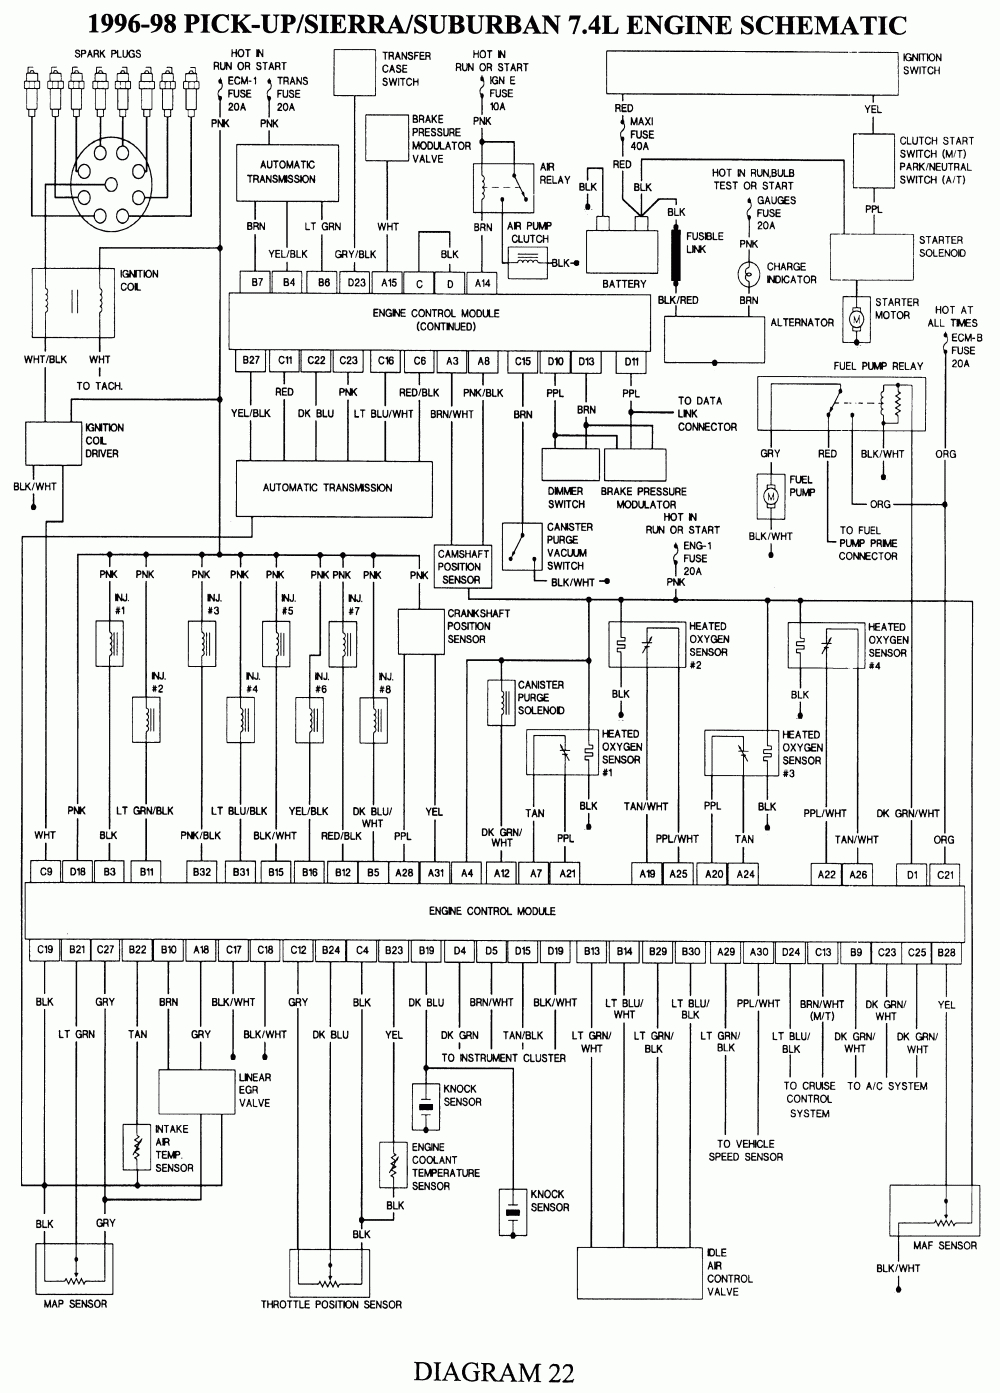 Repair Guides | Wiring Diagrams | Wiring Diagrams | Autozone - 1996 Chevy Silverado Wiring Diagram